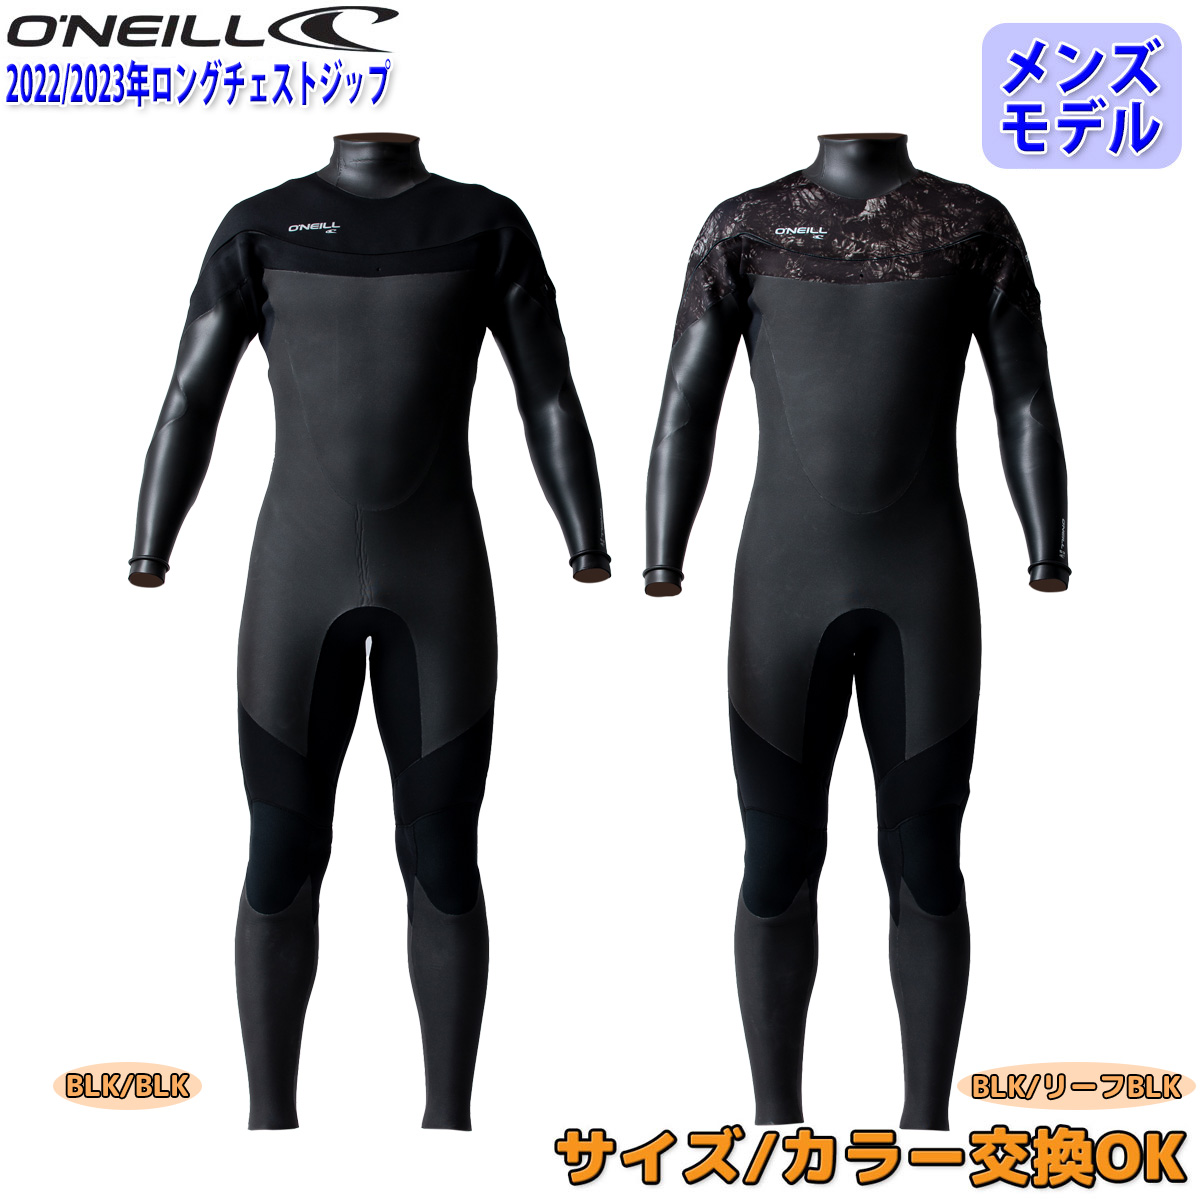 22-23 O'NEILL オニール セミドライ ウェットスーツ 5×3 2022 日本正規